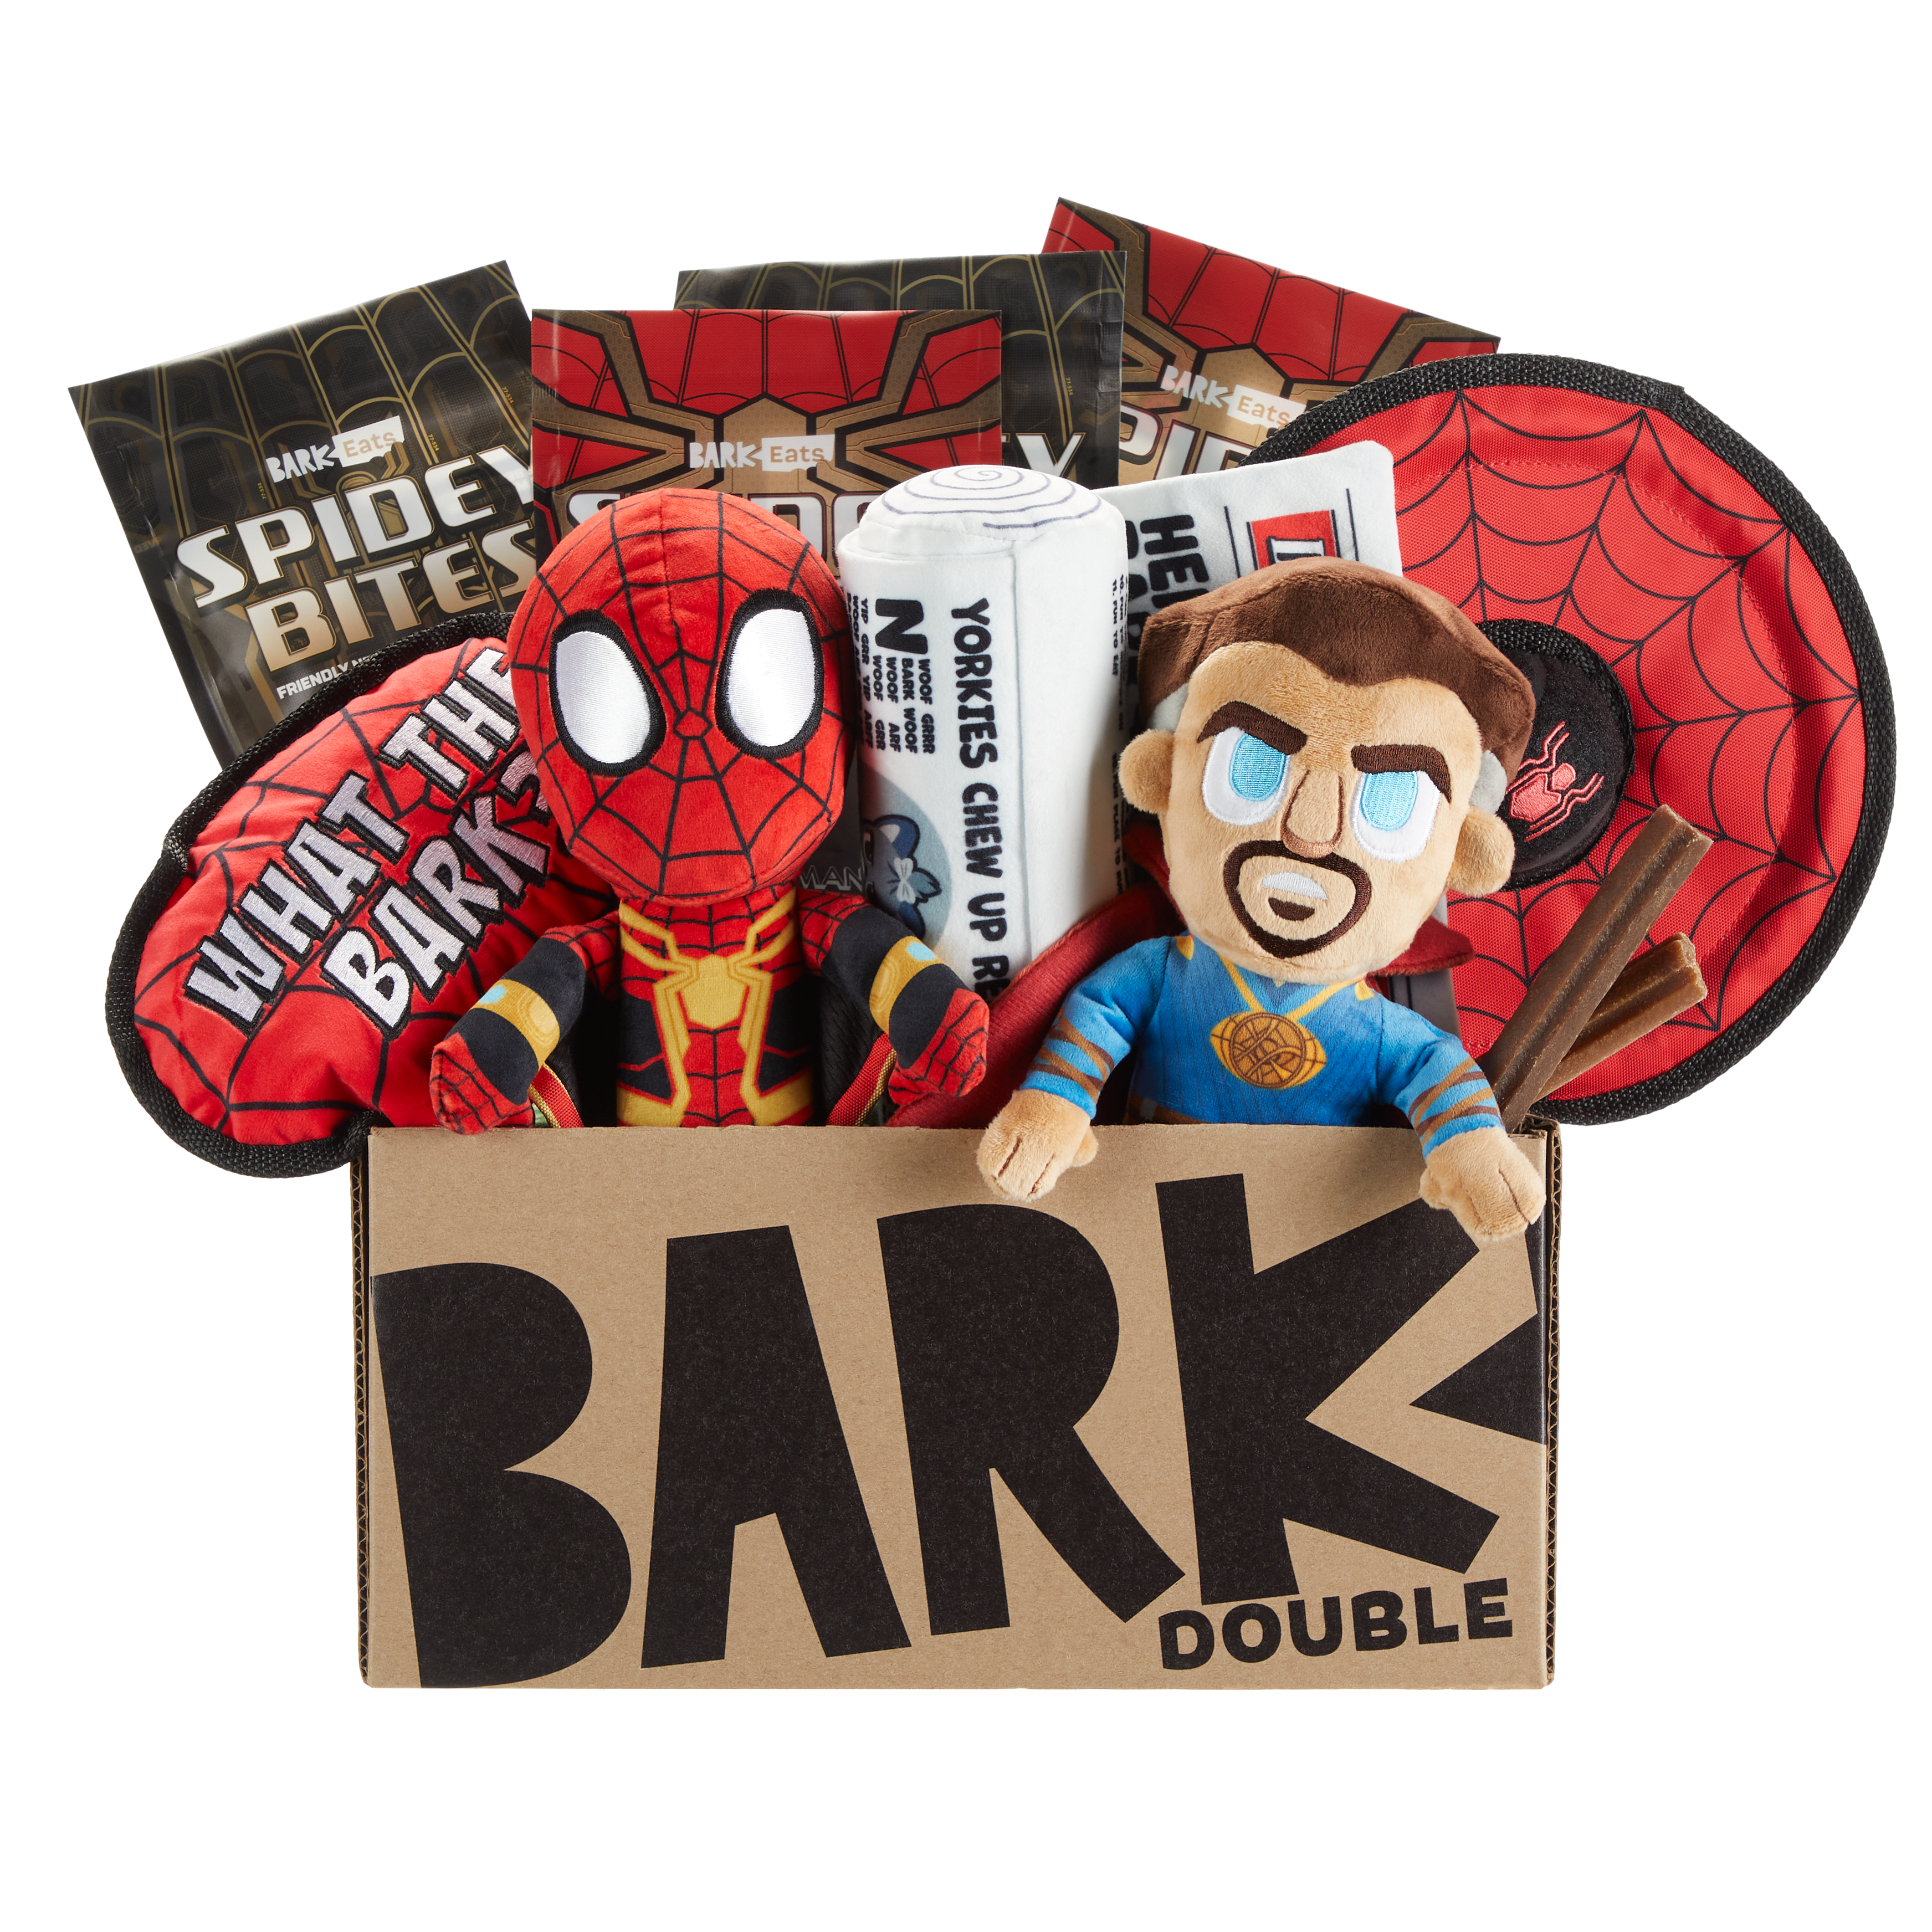 barkbox spiderman